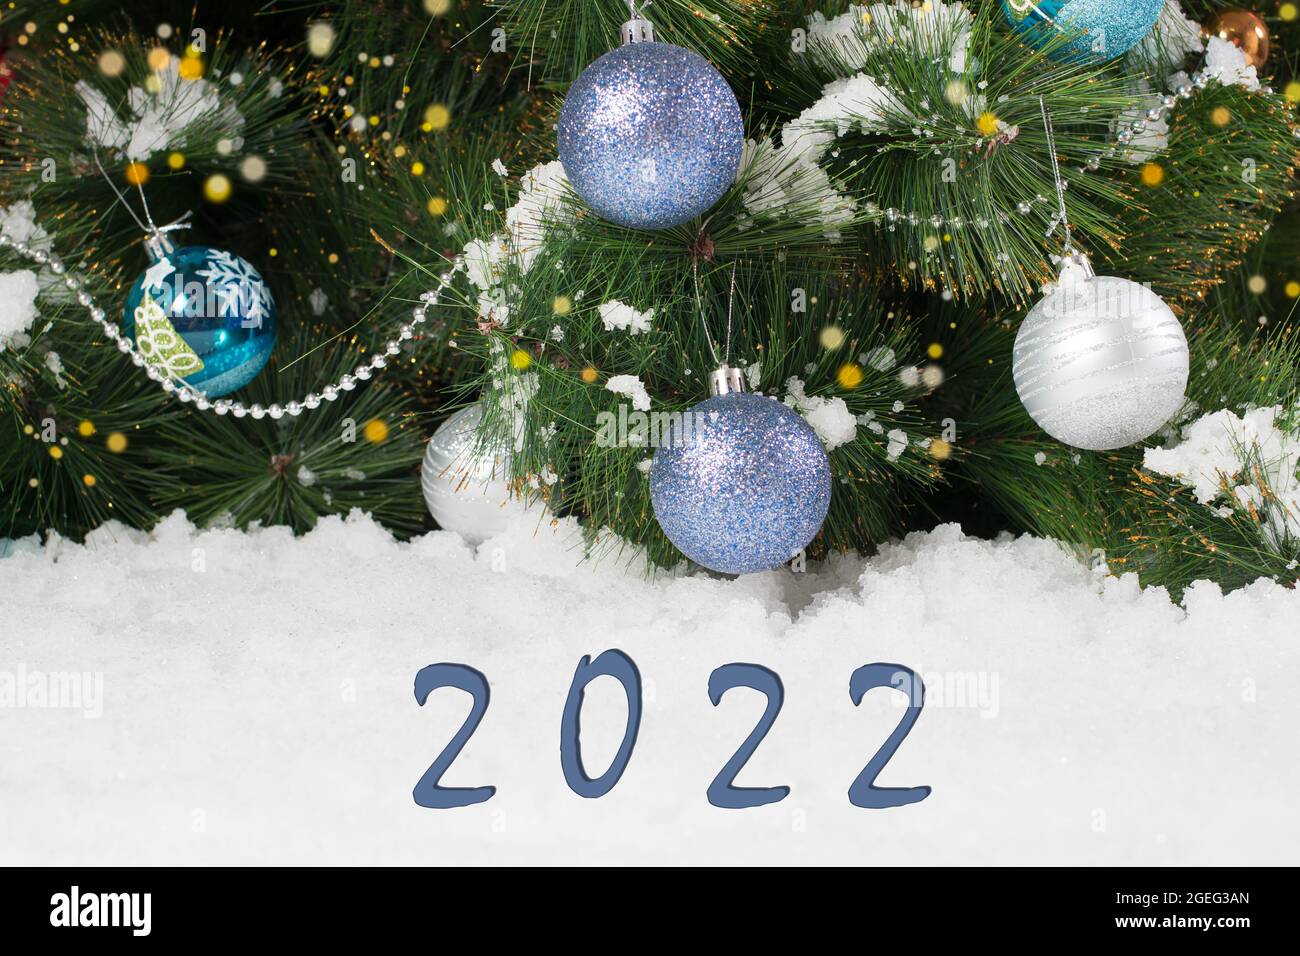 Hermosa postal navideña horizontal en azul y blanco con números 2022 - árbol con bolas de juguetes y nieve Foto de stock